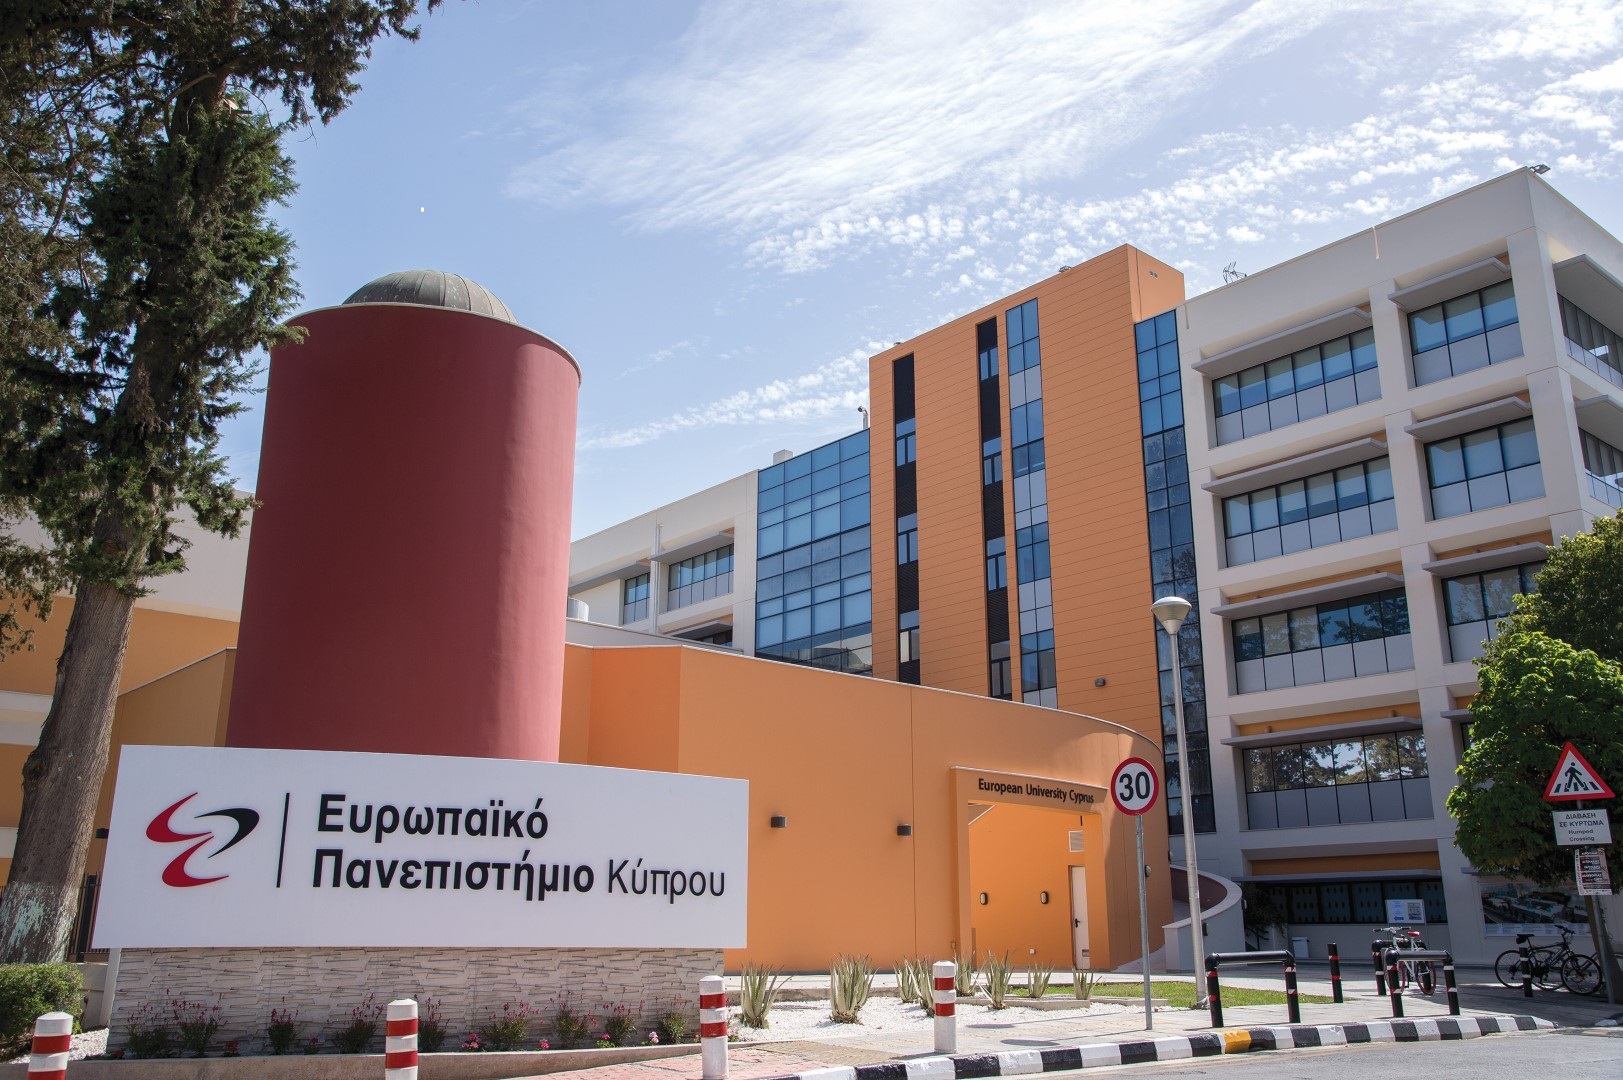 Διαδικτυακή εκδήλωση ενημέρωσης για τα προγράμματα σπουδών του Ευρωπαϊκού Πανεπιστημίου Κύπρου